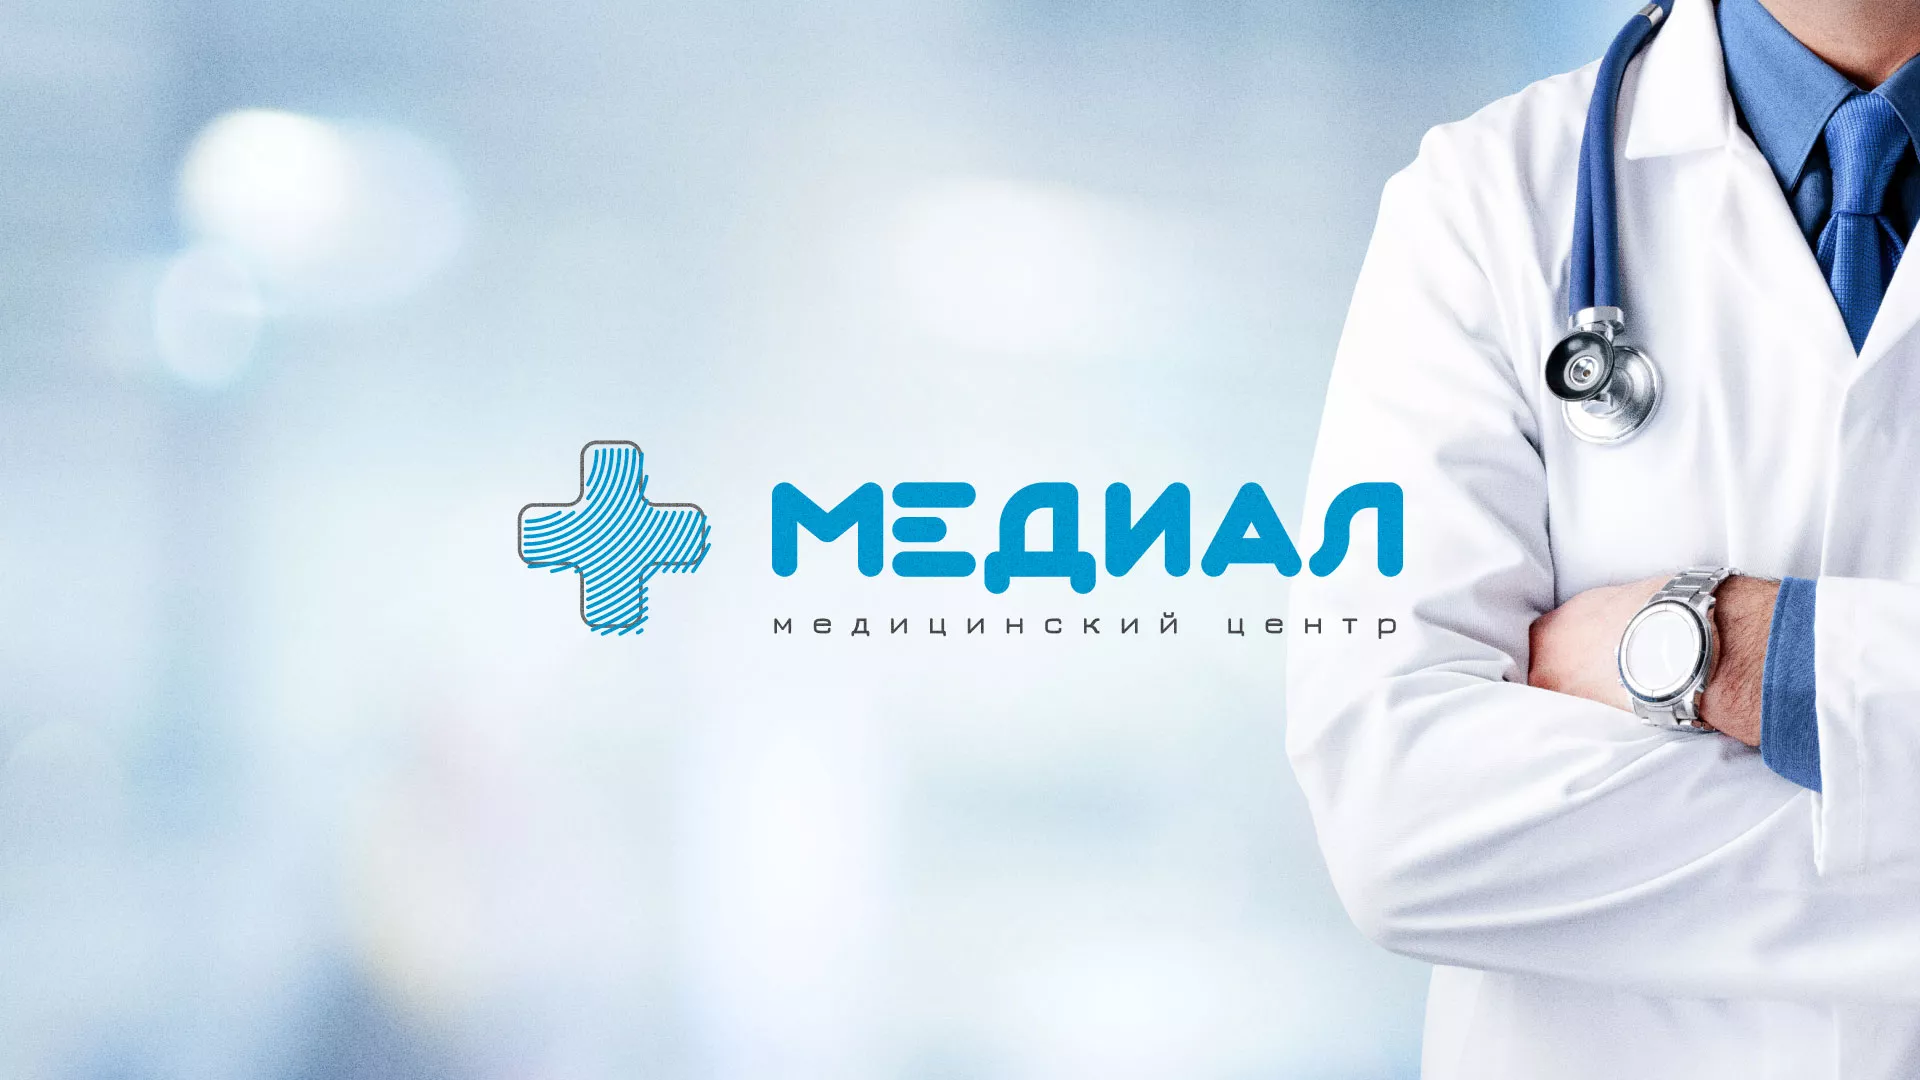 Создание сайта для медицинского центра «Медиал» в Санкт-Петербурге